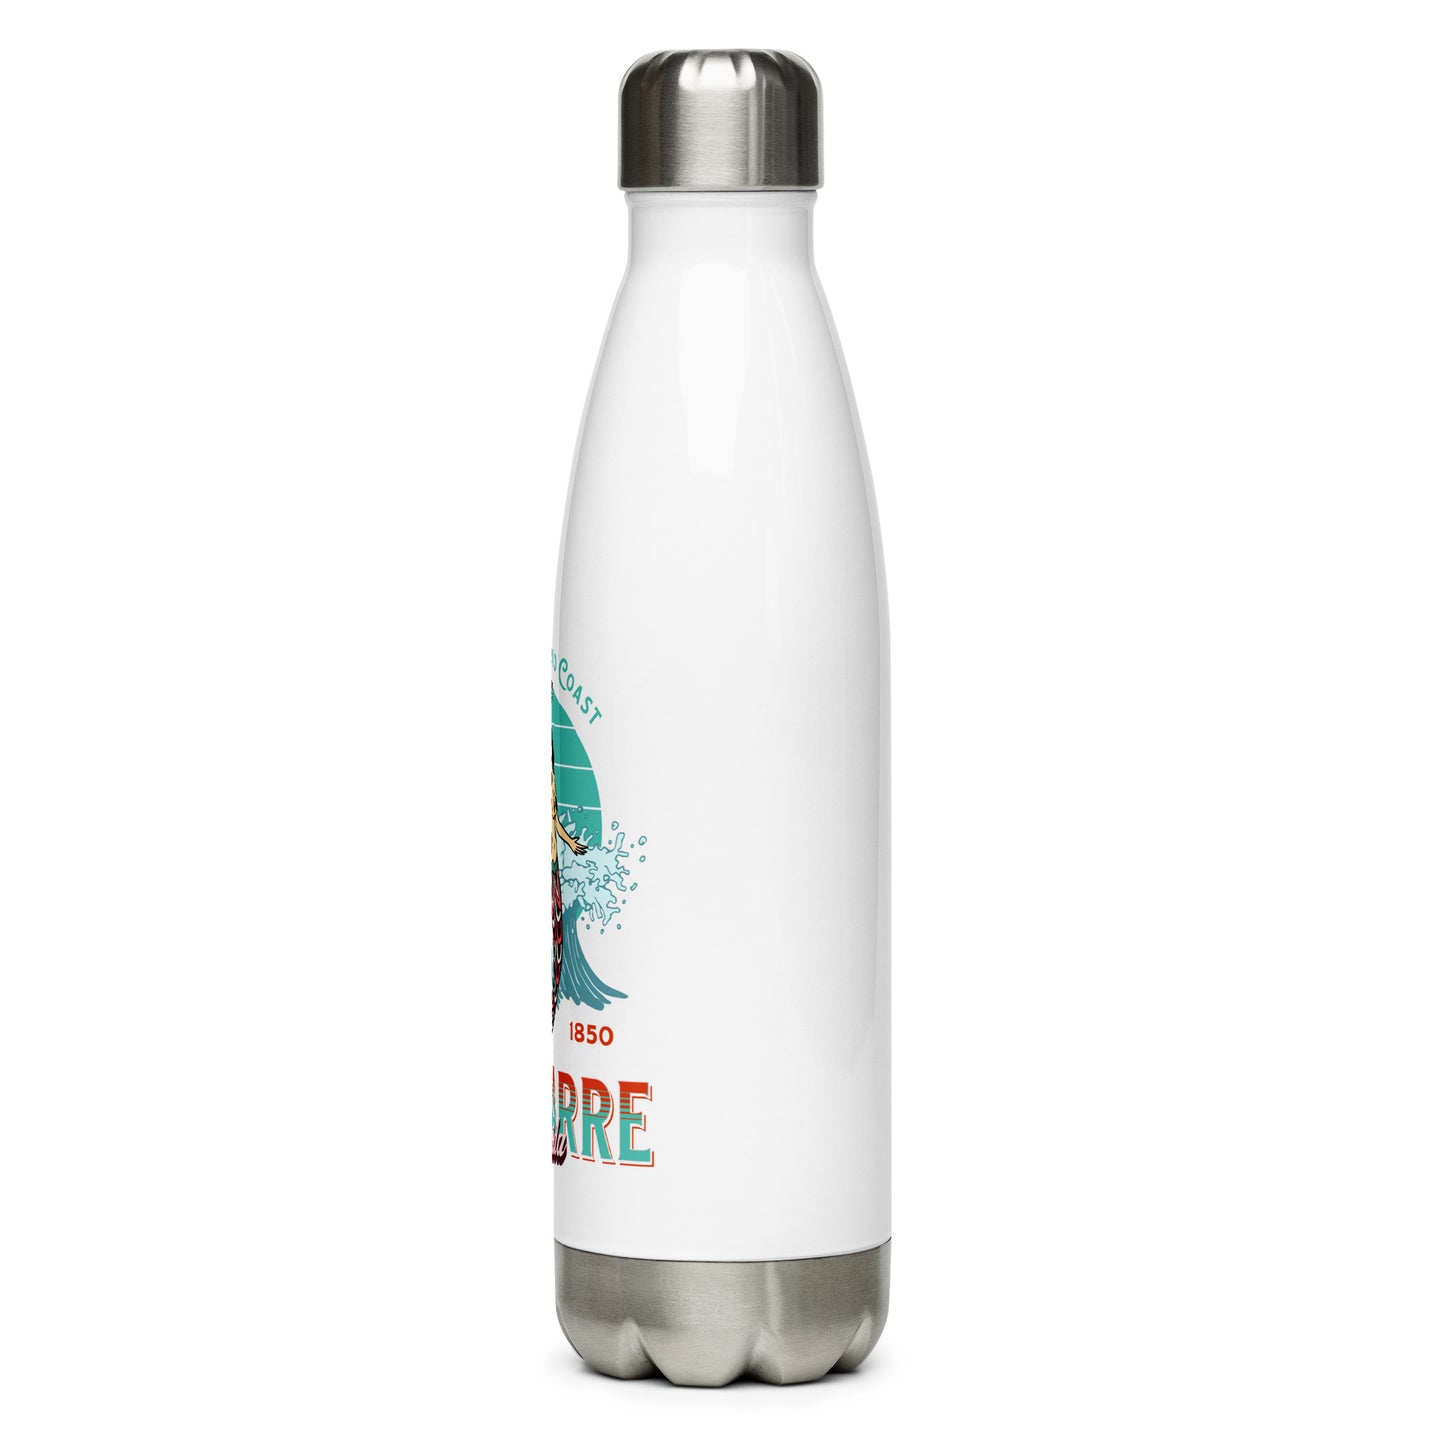 Navarre FL Mermaid Stainless Steel Water Bottle